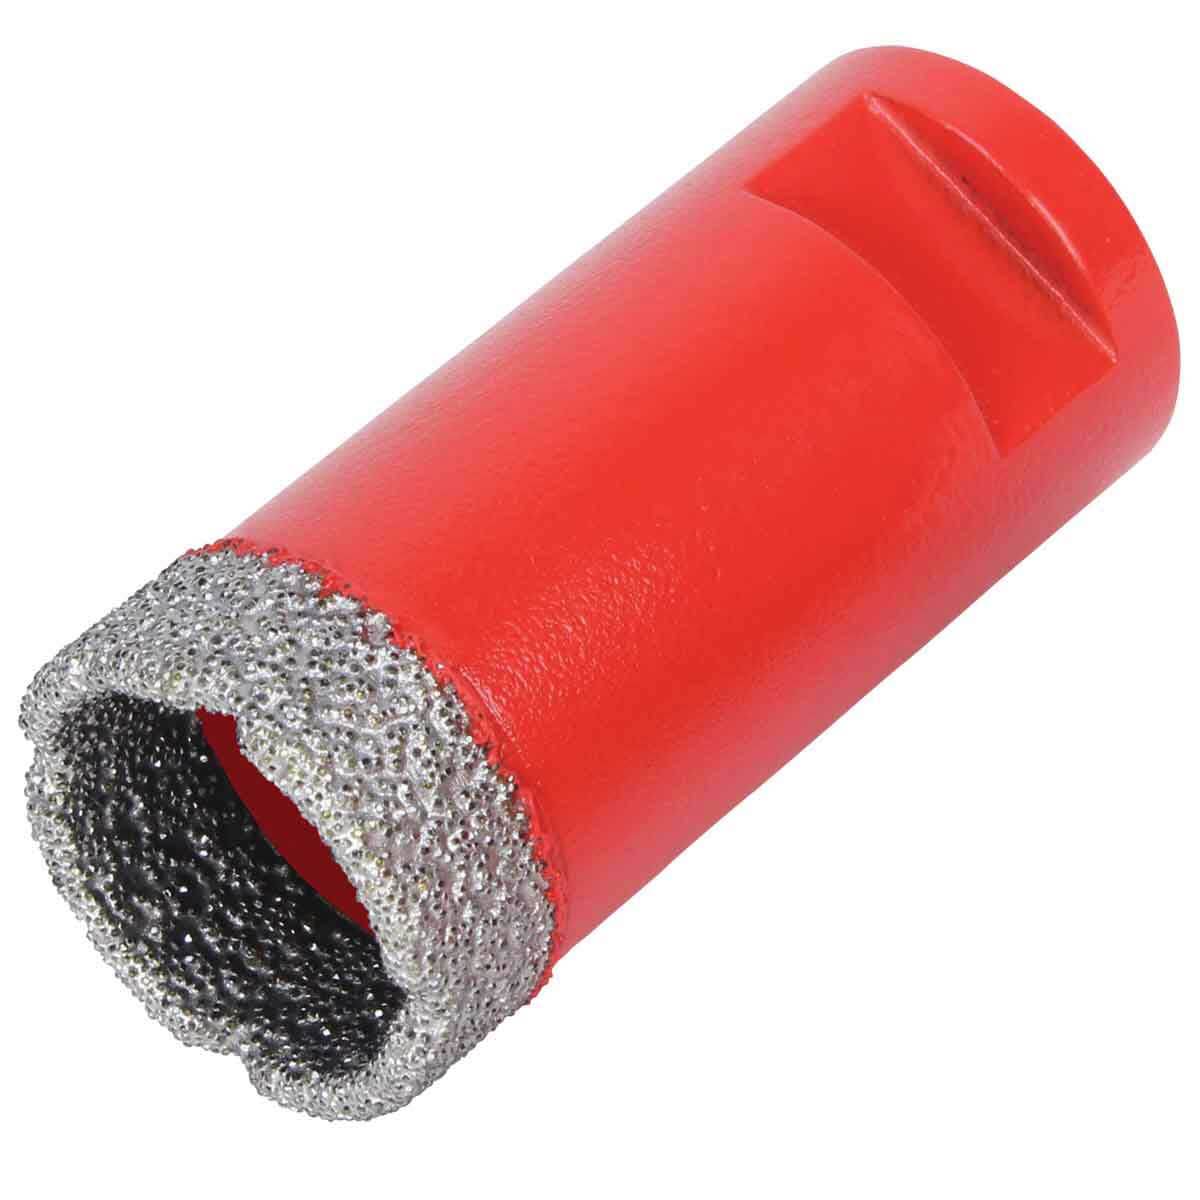 Rubi Tools 04911 Dry Cutting Diamond Drill Bit Size 65 mm 2-1/2